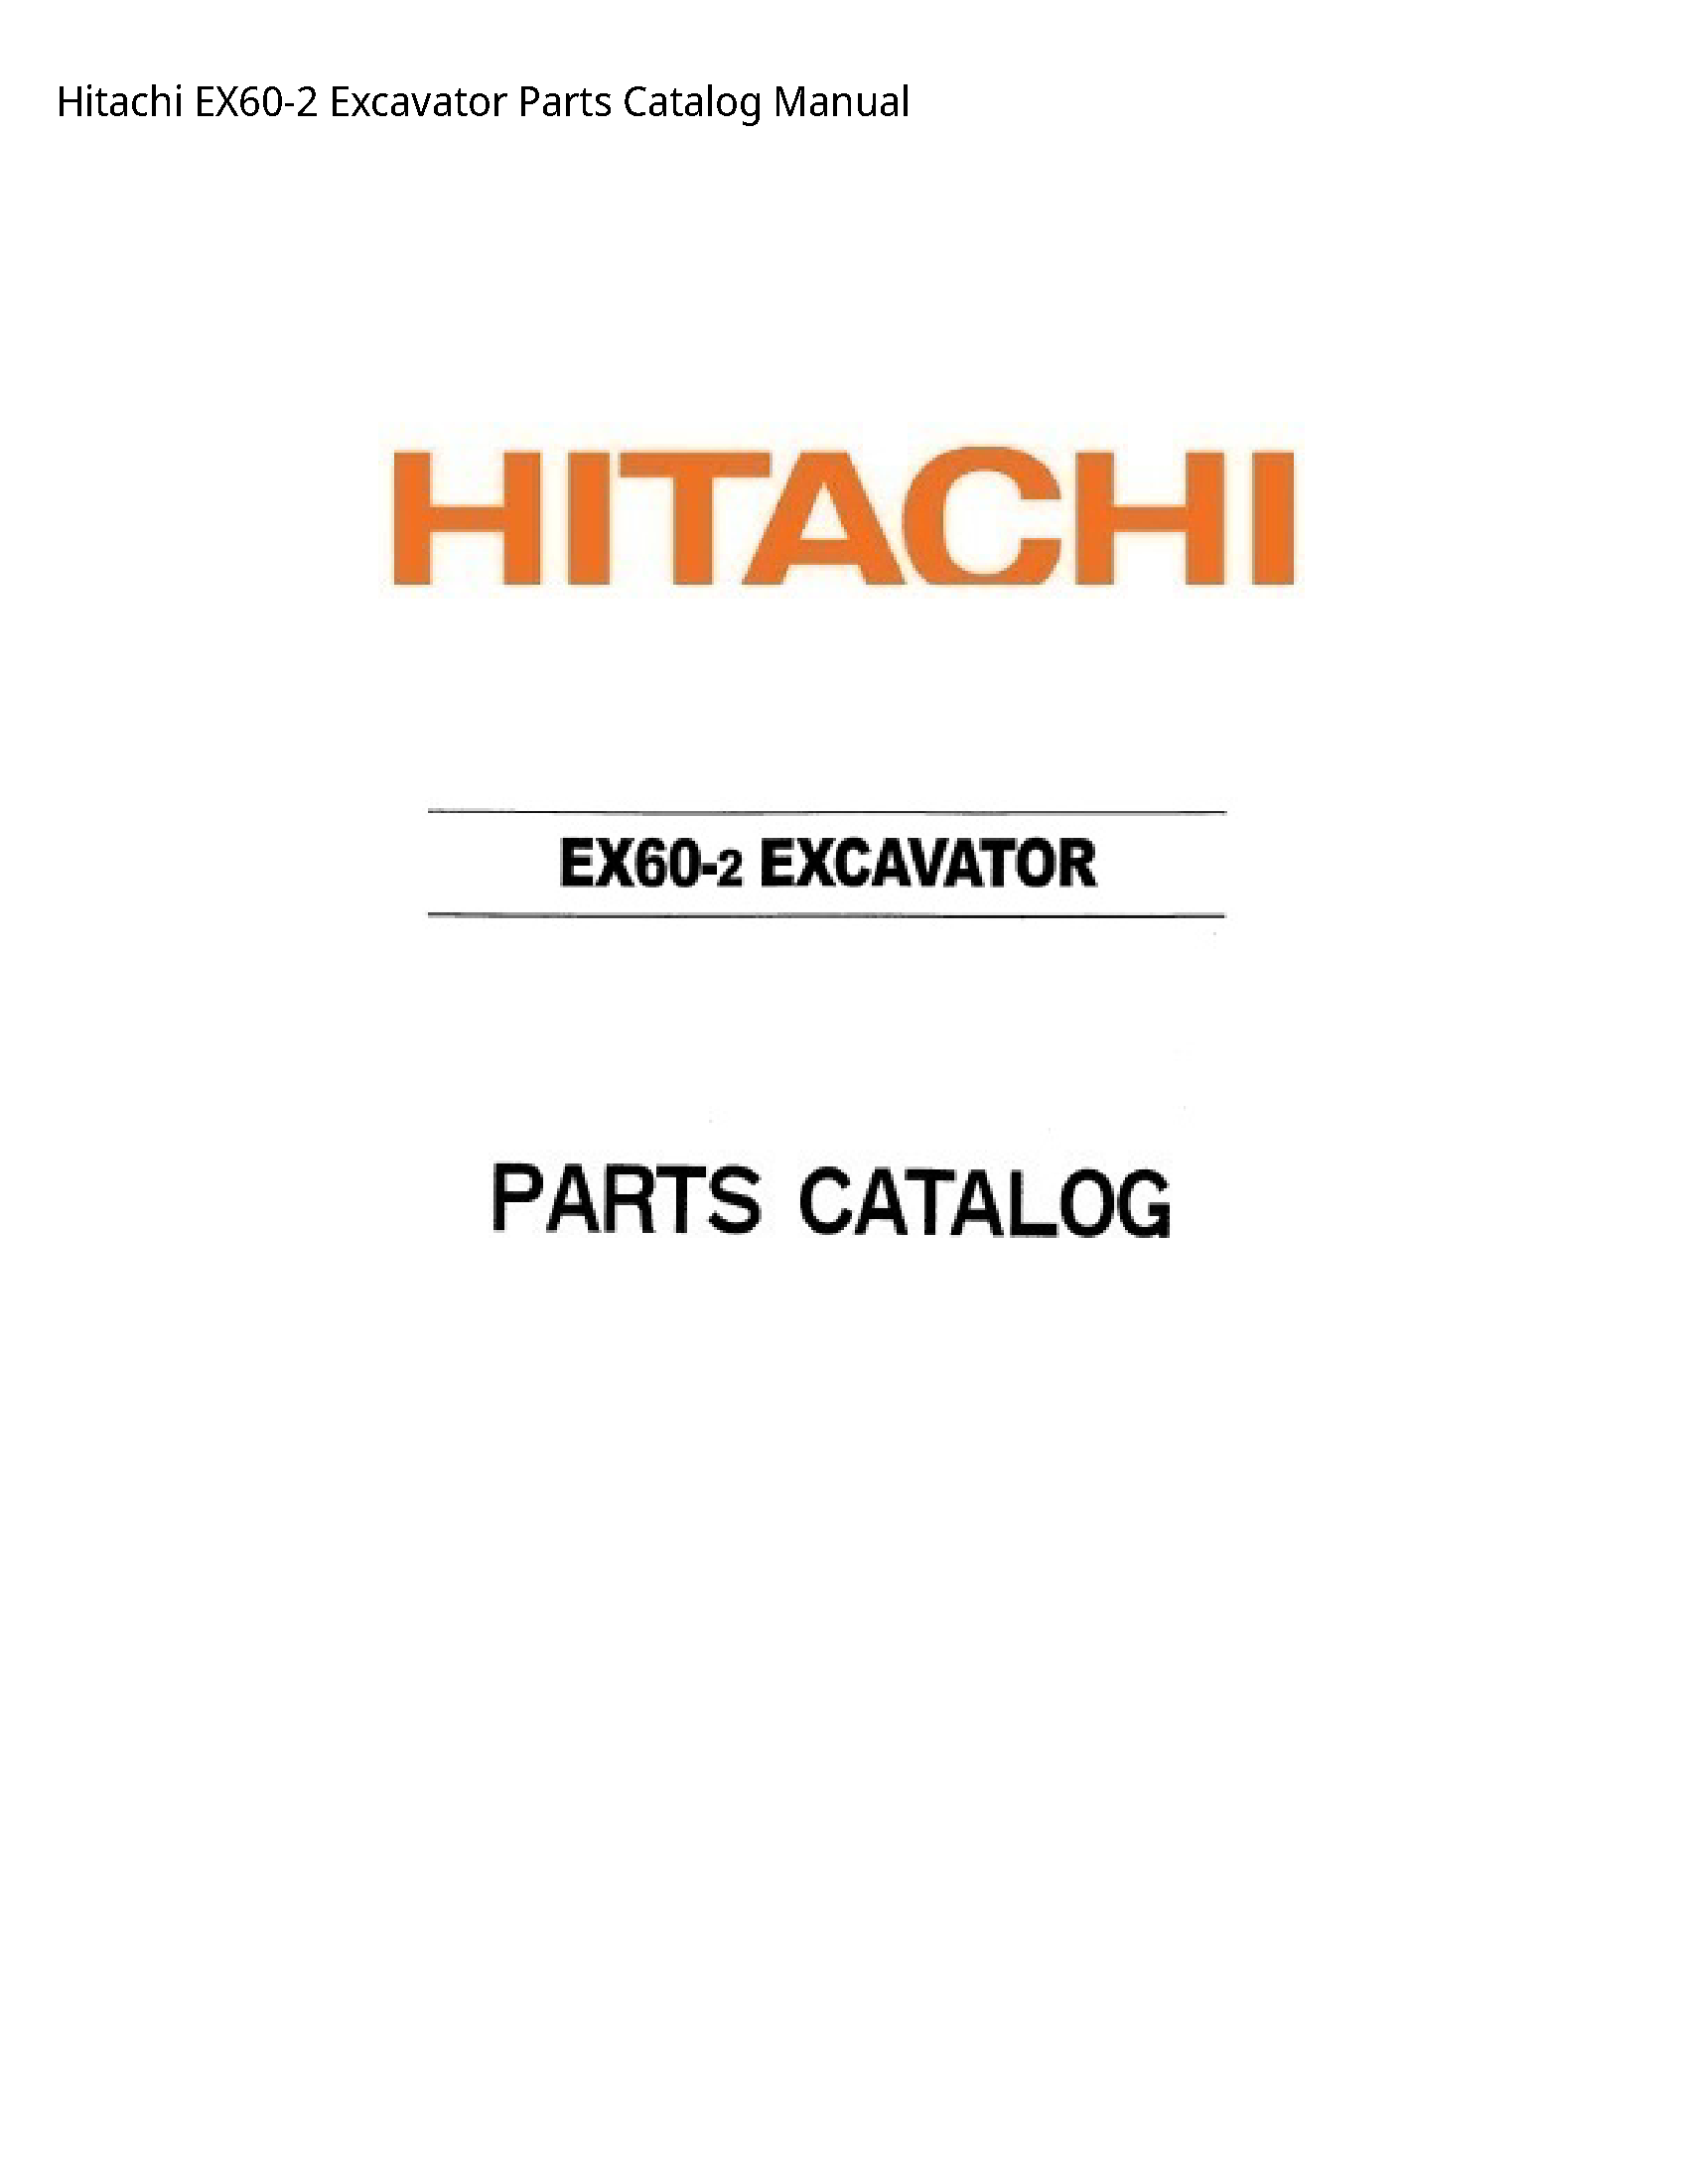 Hitachi EX60-2 Excavator Parts Catalog manual